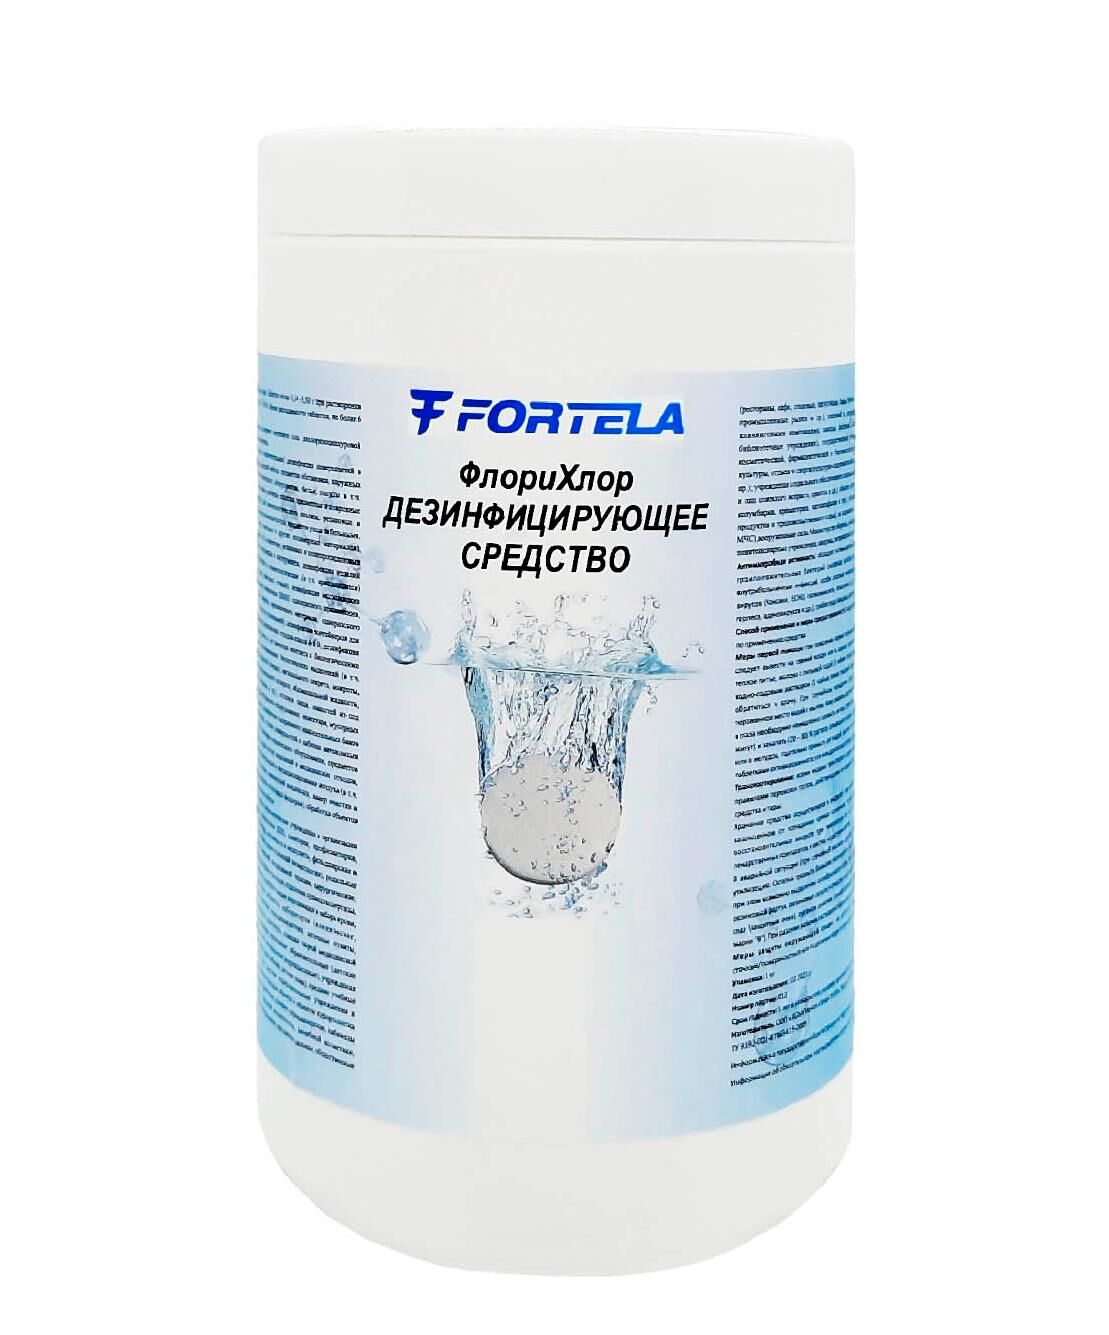 Дезинфицирующее средство Fortela ФлориХлор 300 таб (3,4 гр табллетка) (хлорные таблетки)